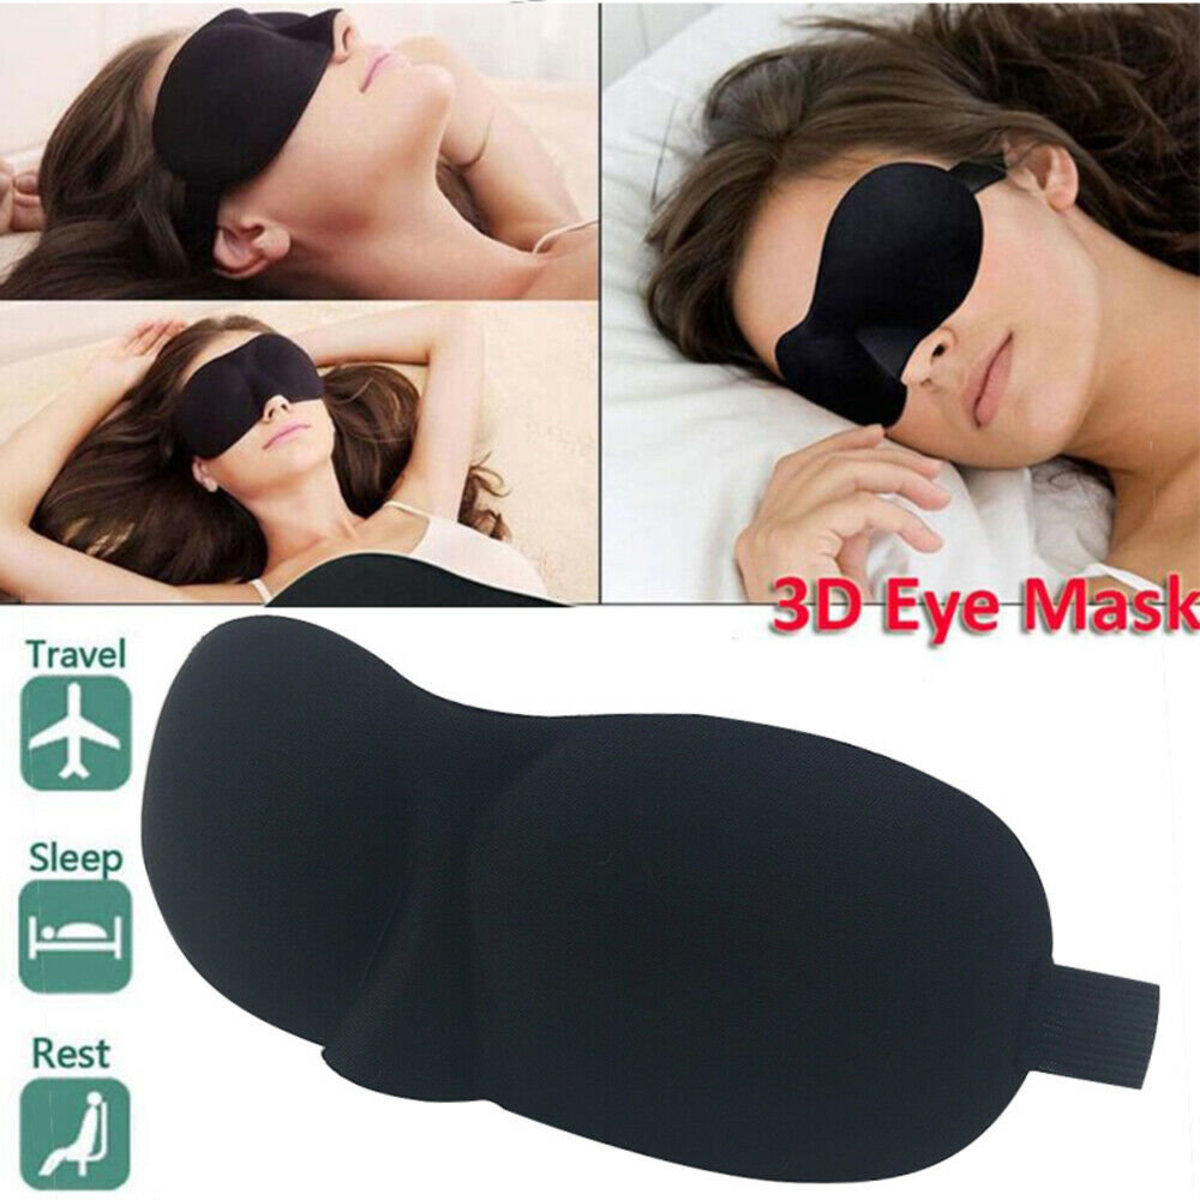 3D 眼罩 （完全黑晒），適合睡覺，旅行，小睡，夜間蒙上眼睛 3D立體造型 遮光眼罩【黑色一個】